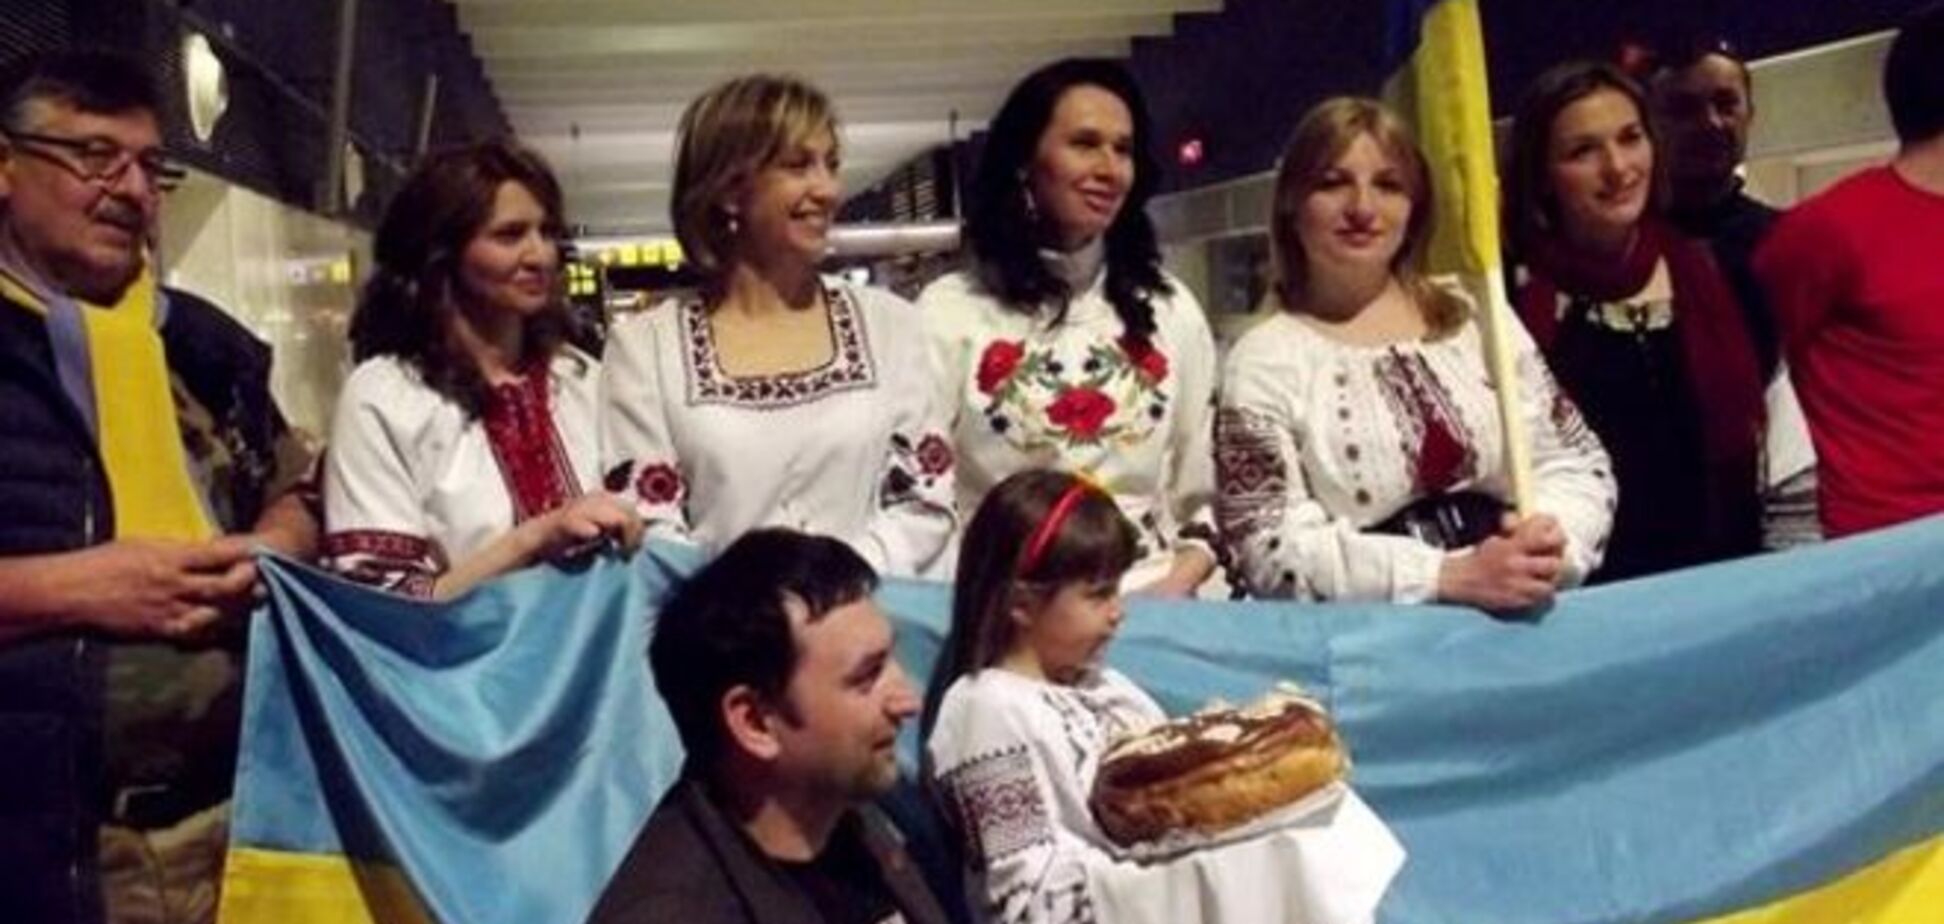 Сборная Украины получила в Испании неожиданный сюрприз: фото презента